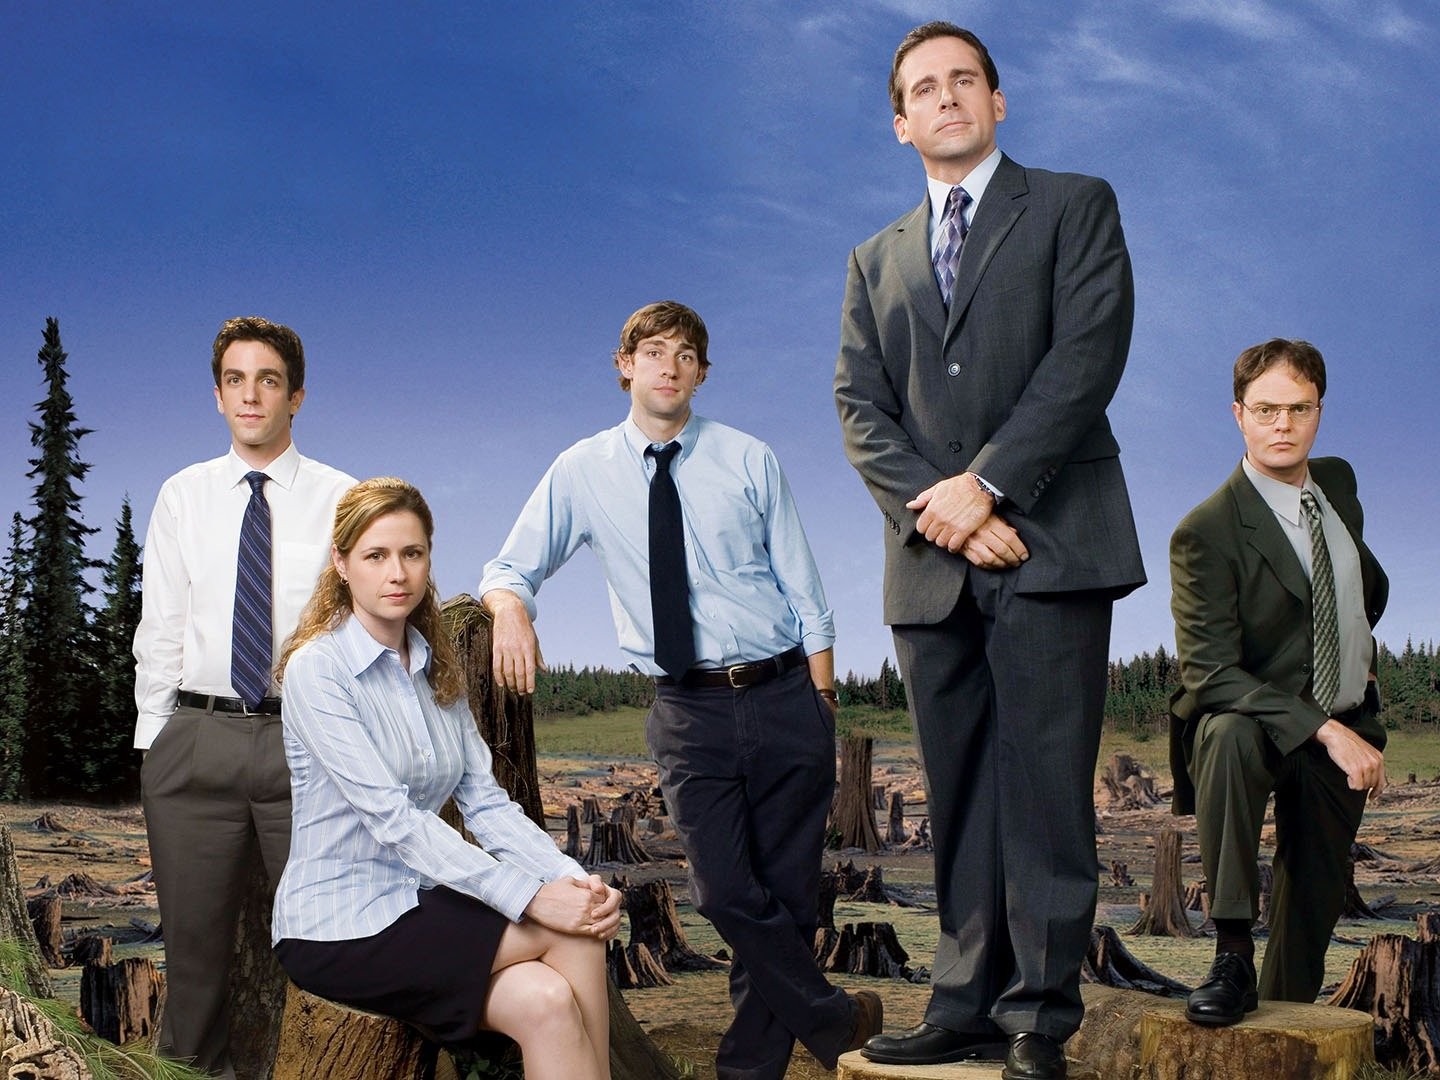 Watch The Office Season 4, Episode 3: Dunder Mifflin Infinity Part 1